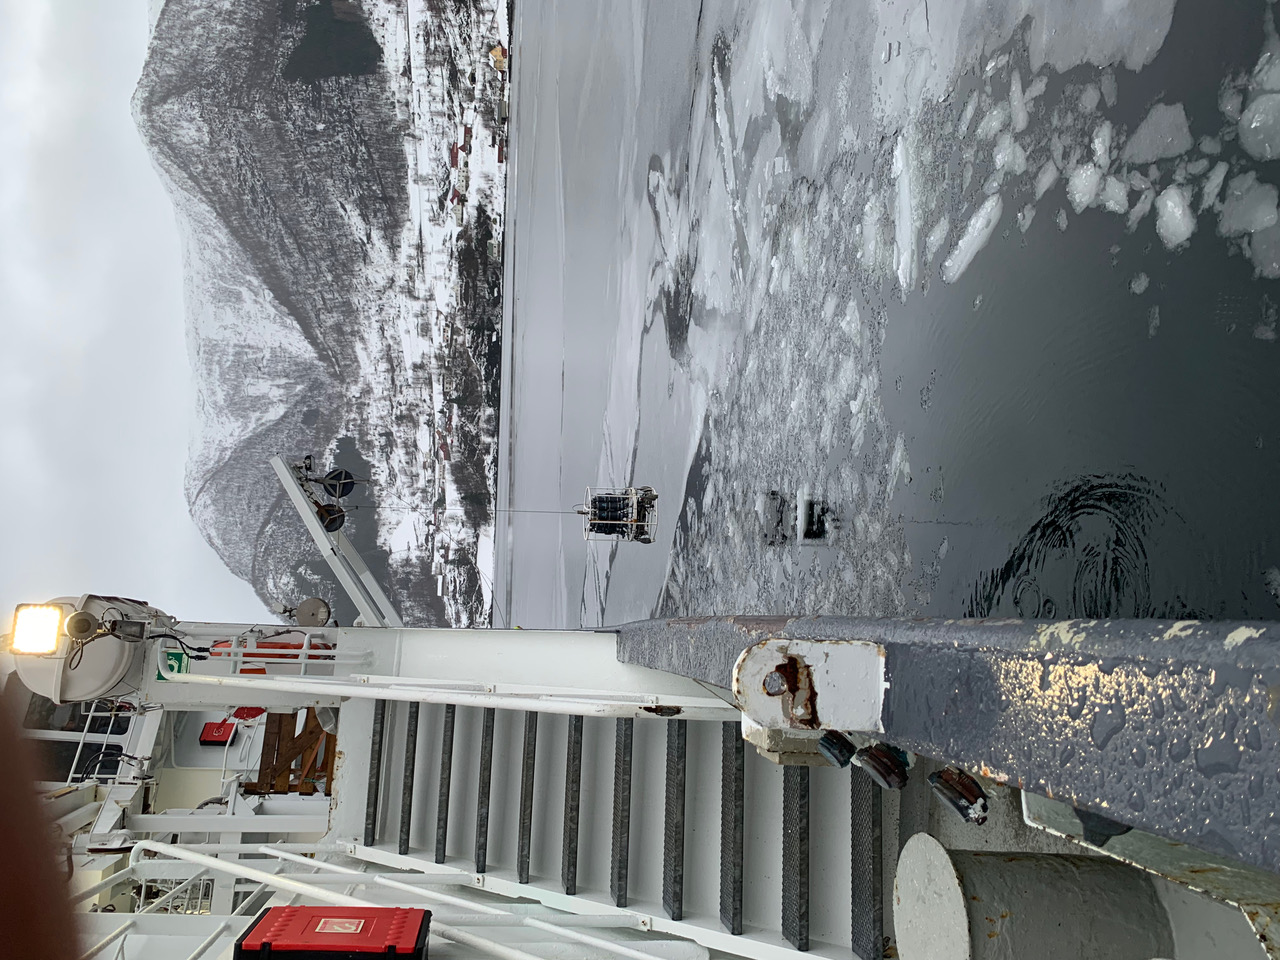 ctd measurement in fjords